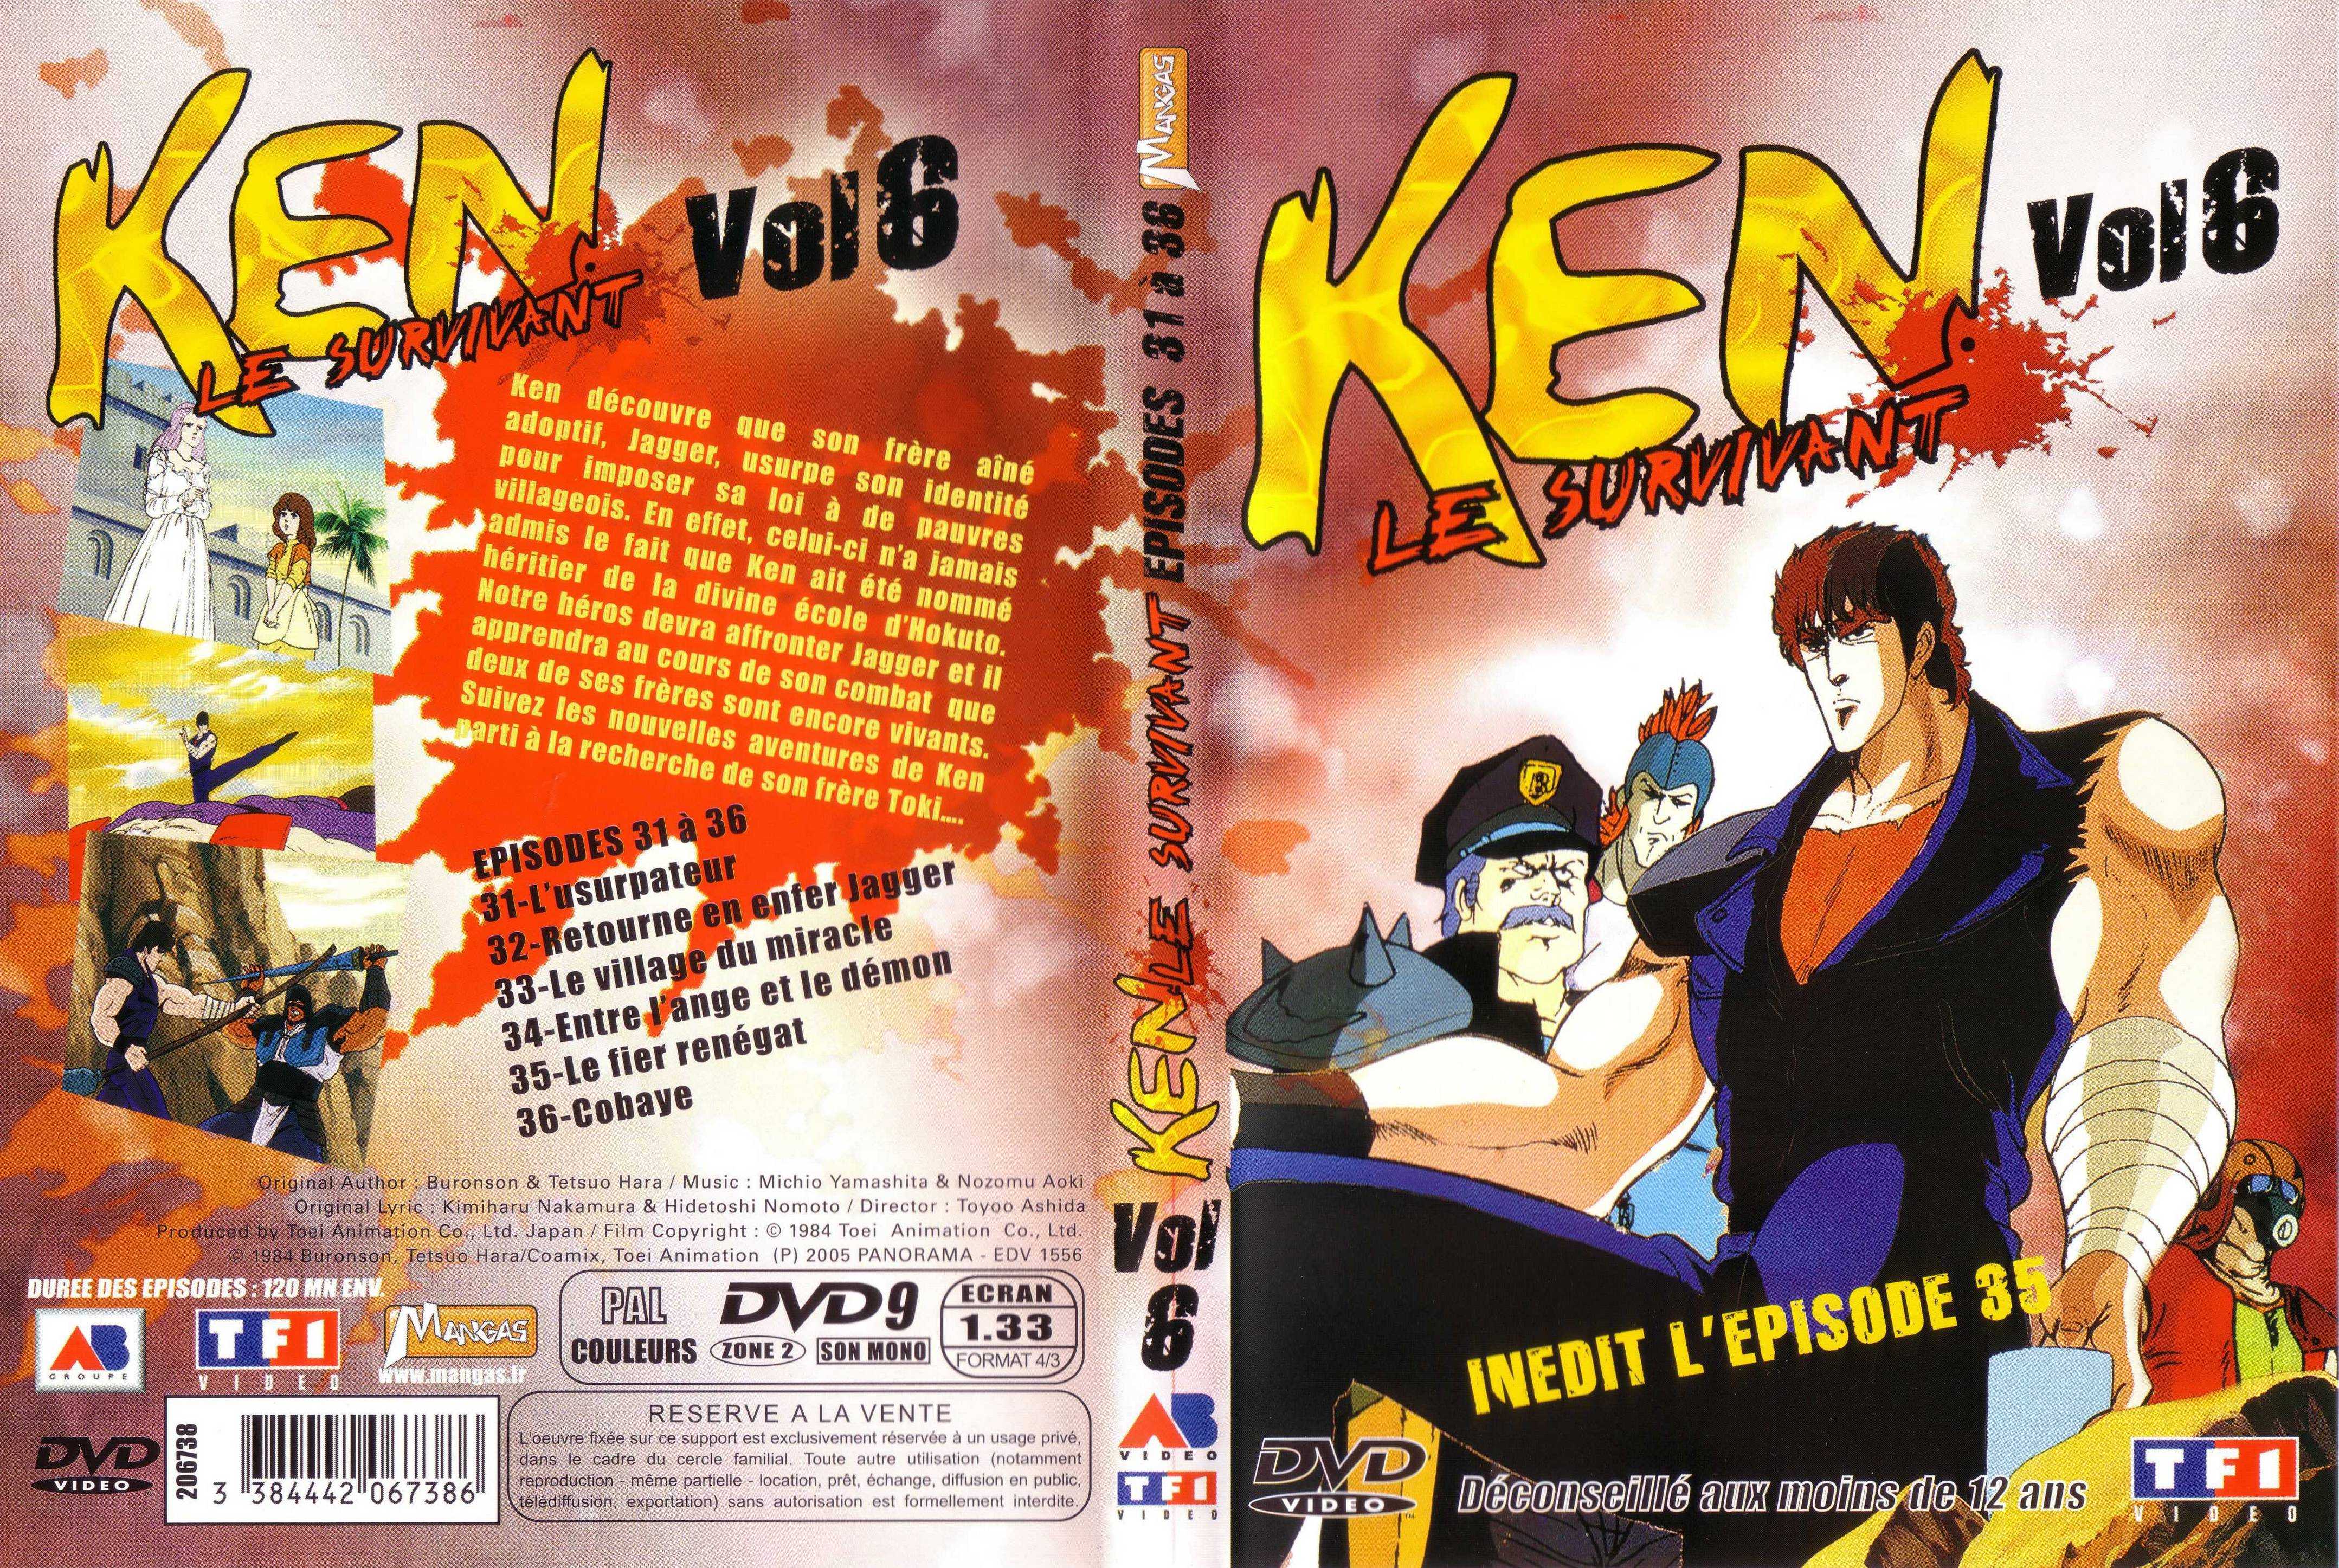 Jaquette DVD Ken le survivant vol 6